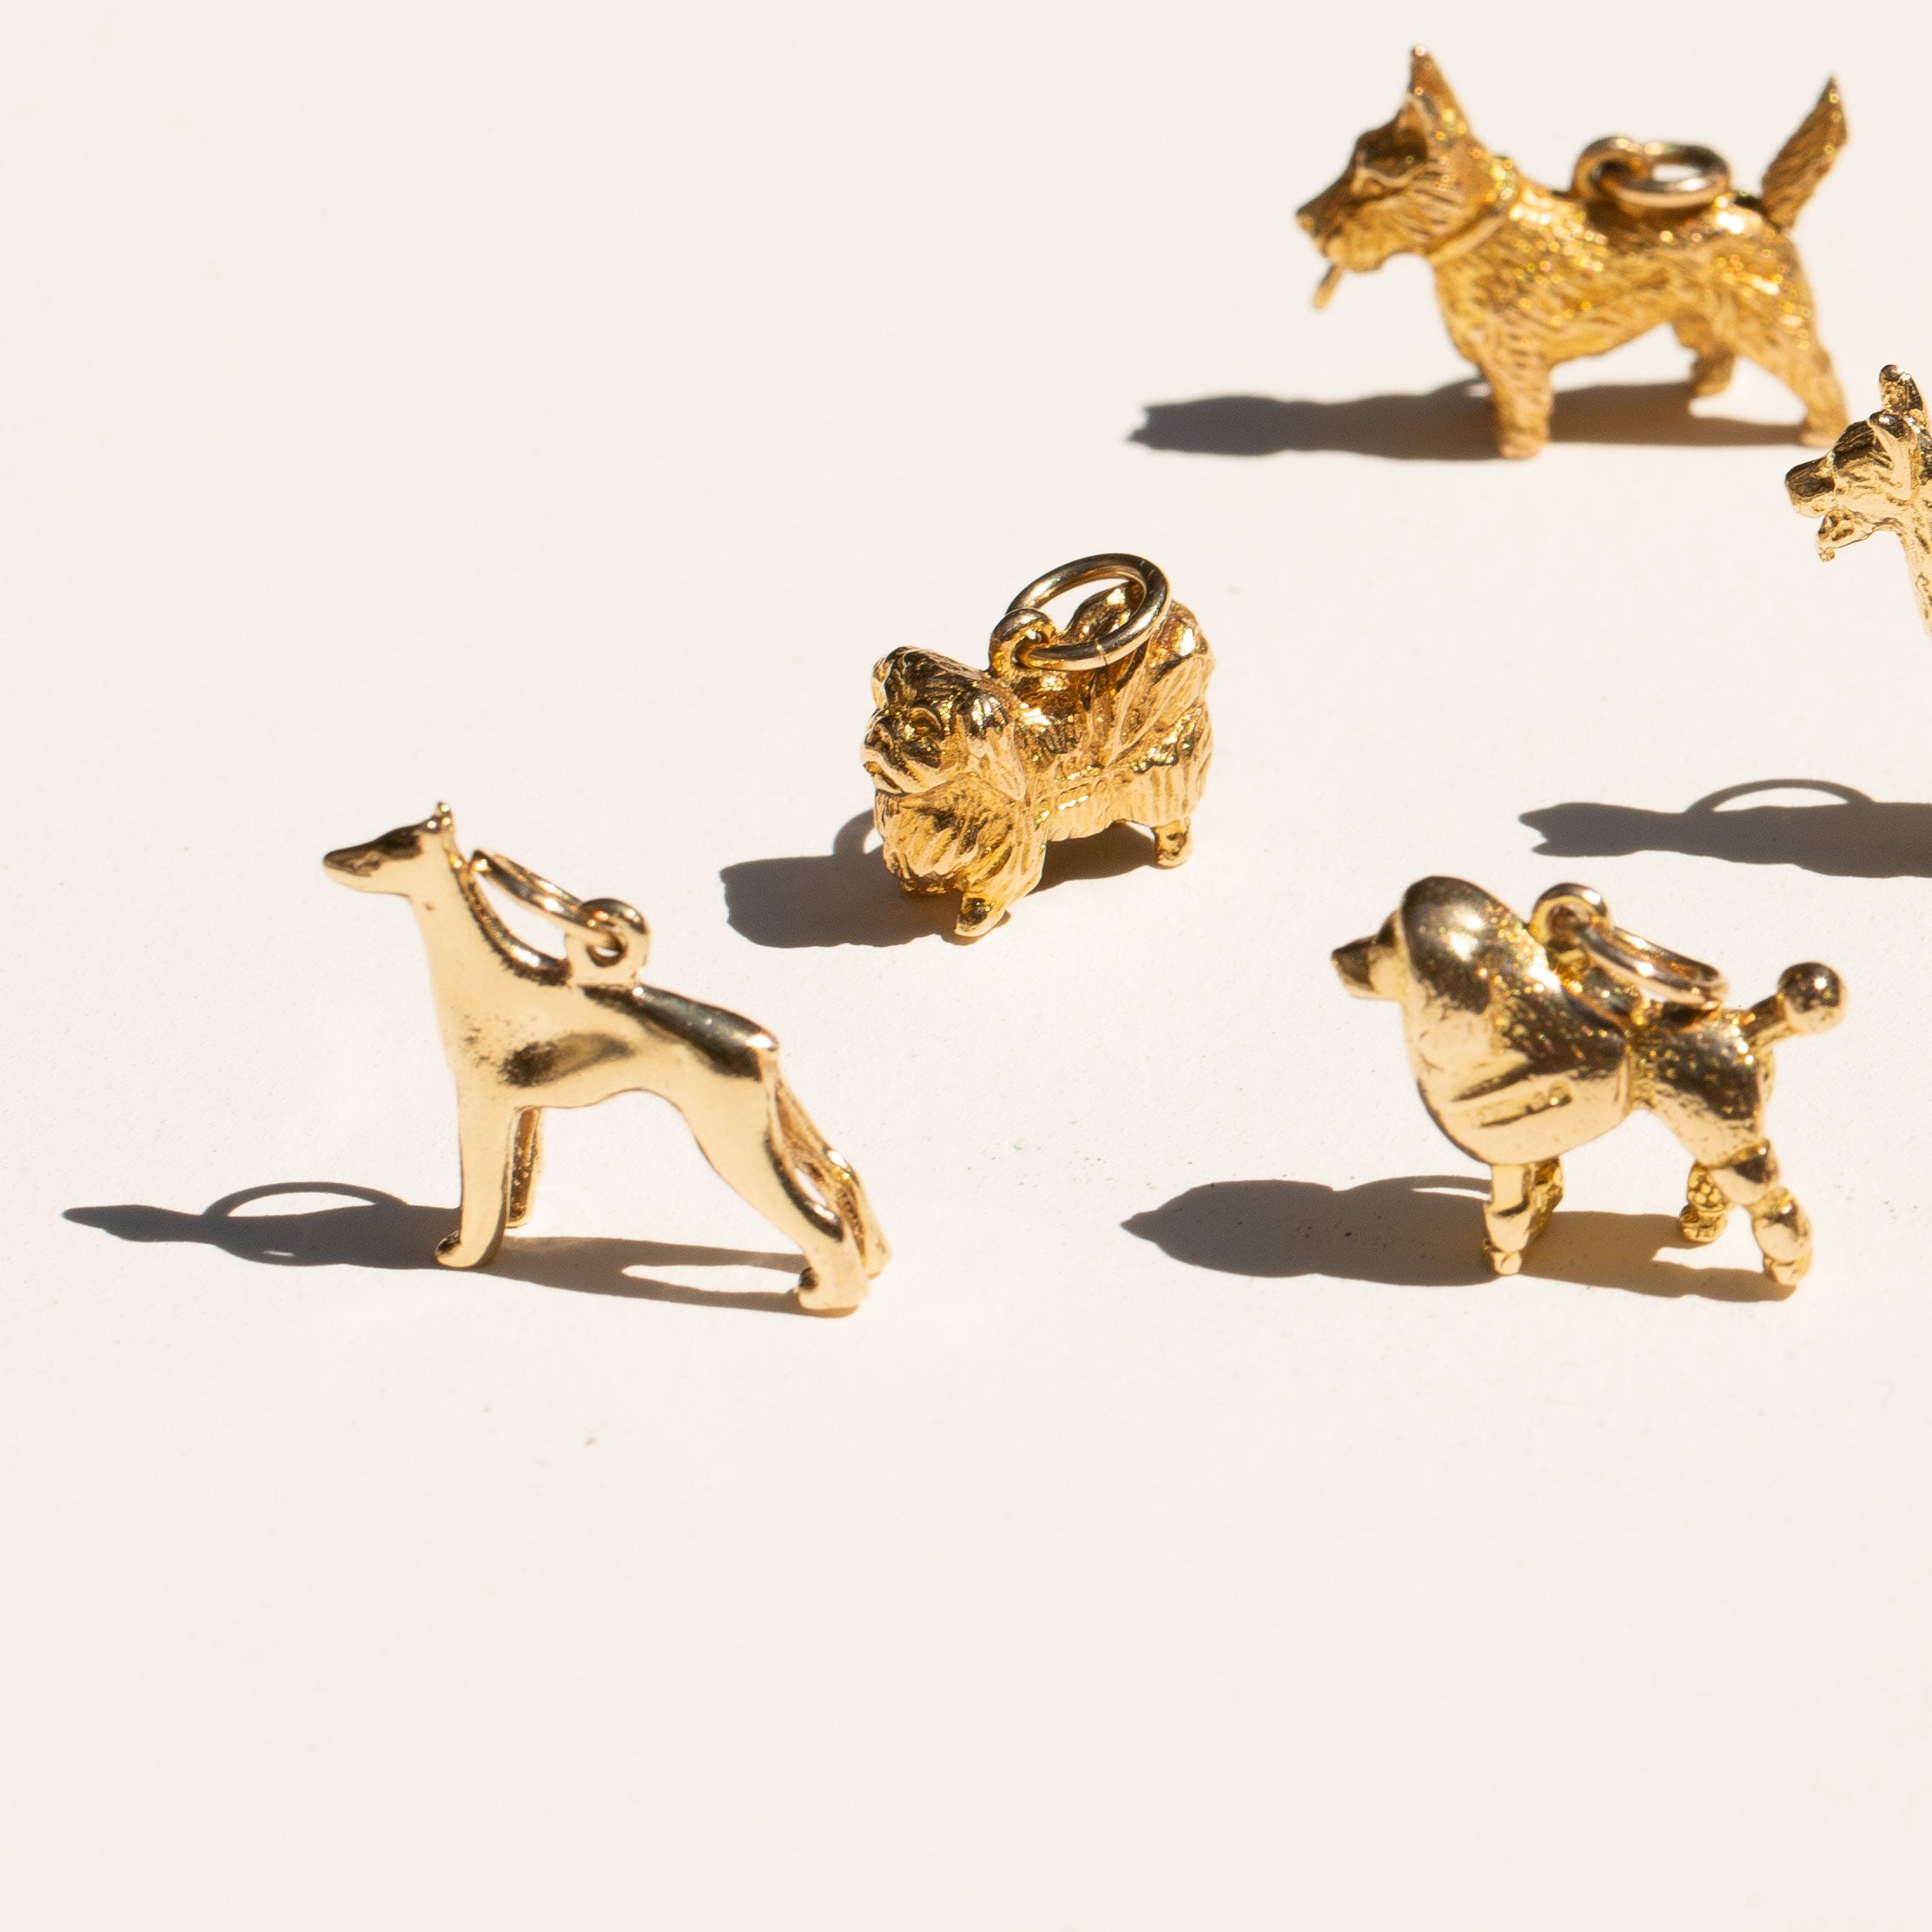 English Pekinese 9k Gold Dog Charm